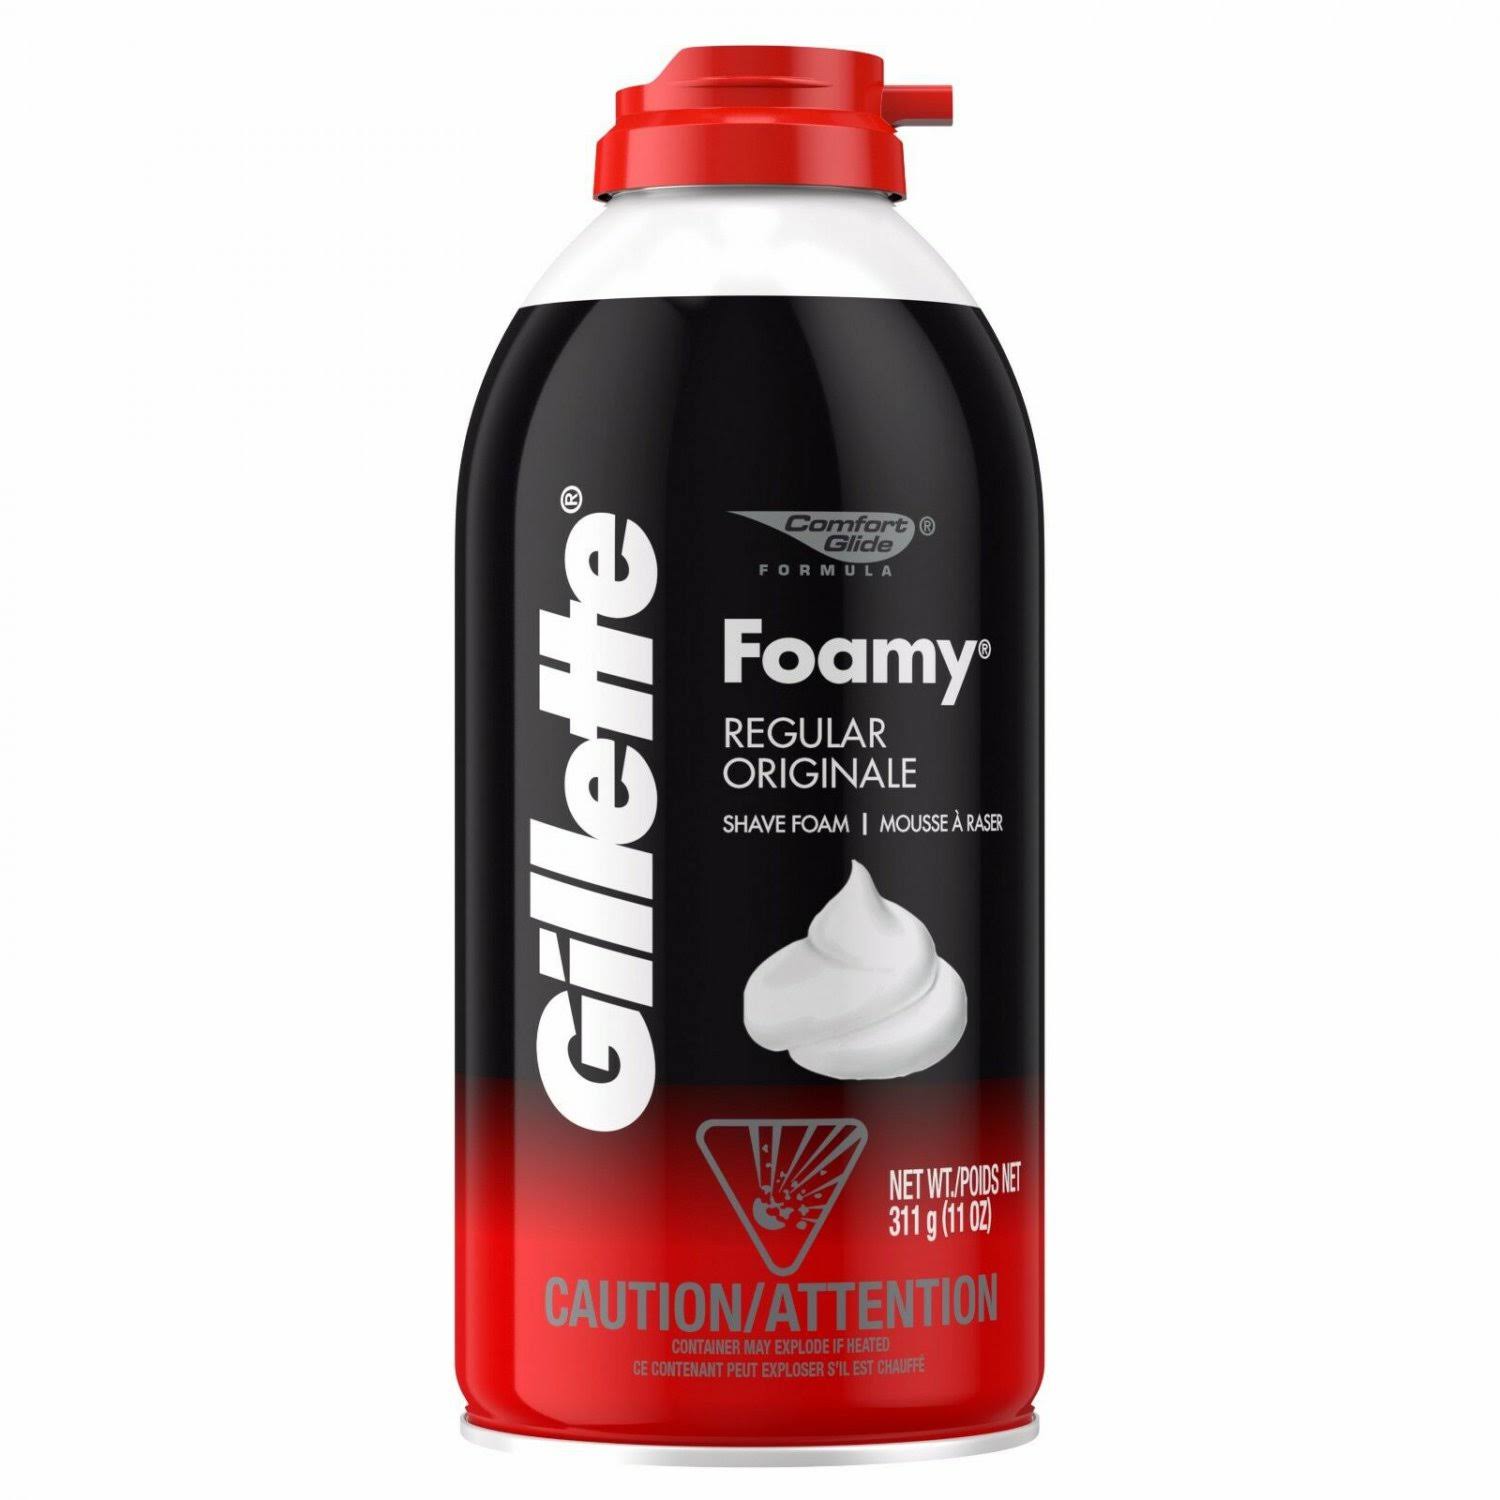 Gillette Foamy Regular Shave Foam - 11oz